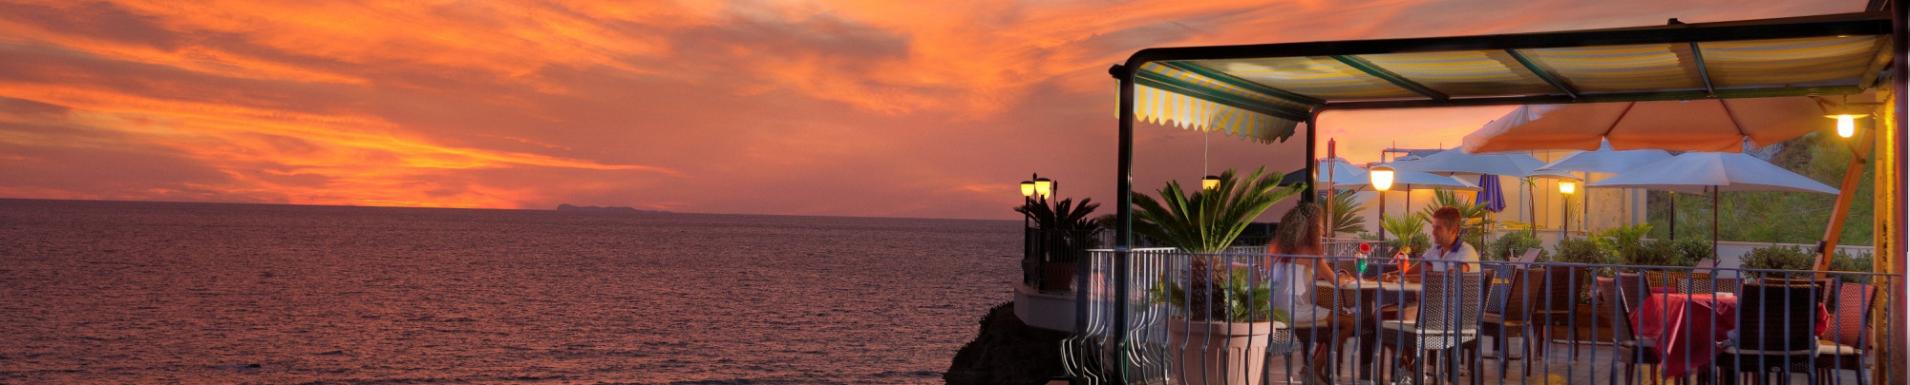 Ferientage um den 25. April und 1. Mai auf Ischia: Paket mit Hotel + Spa